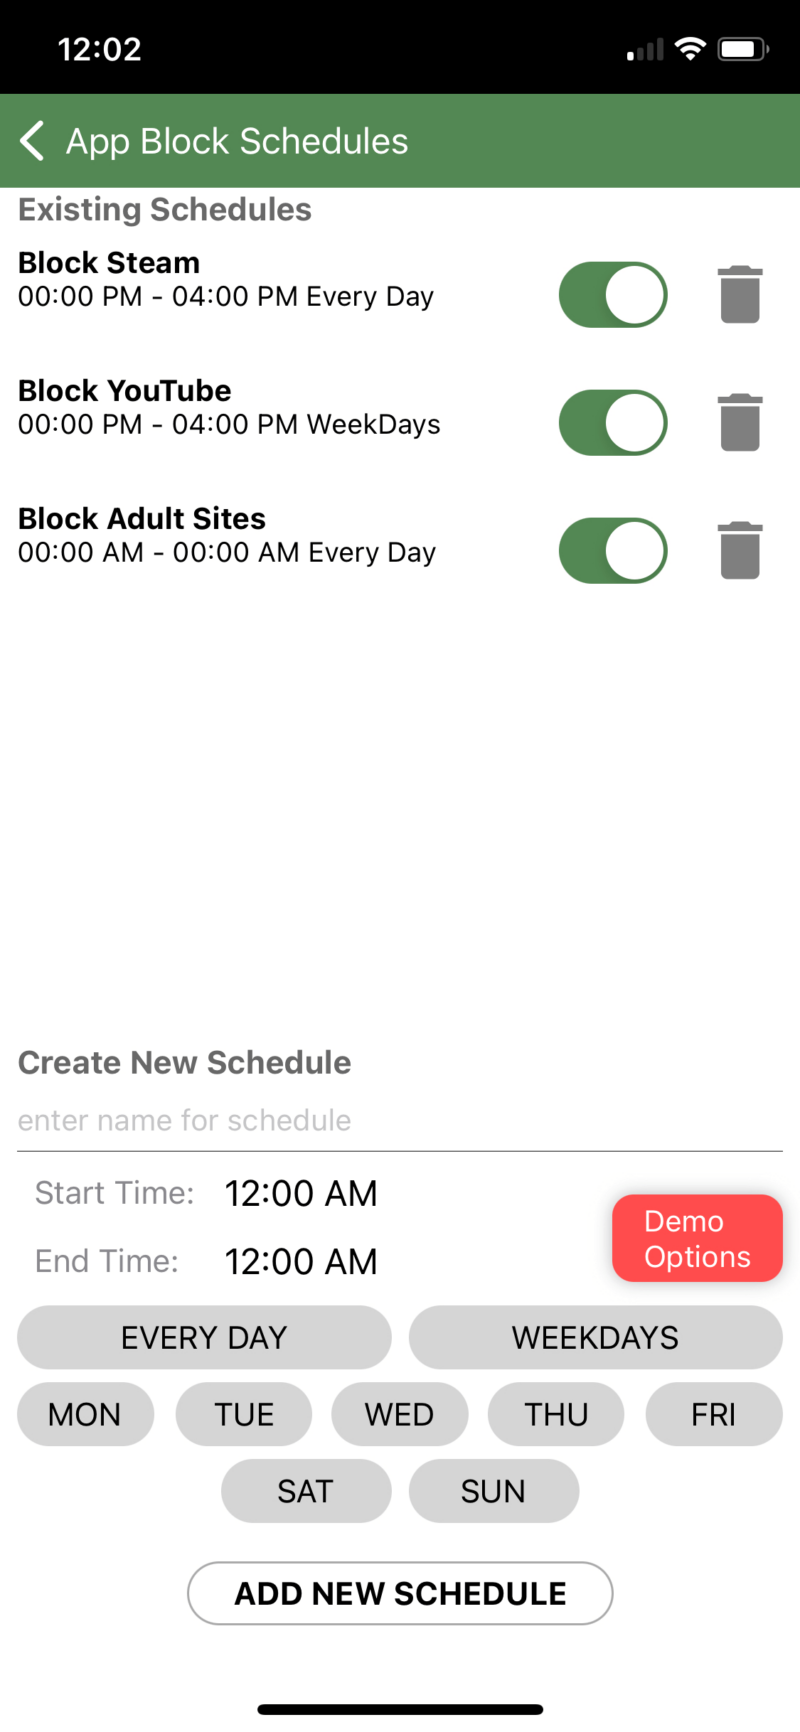 MMGuardian’s app block schedule